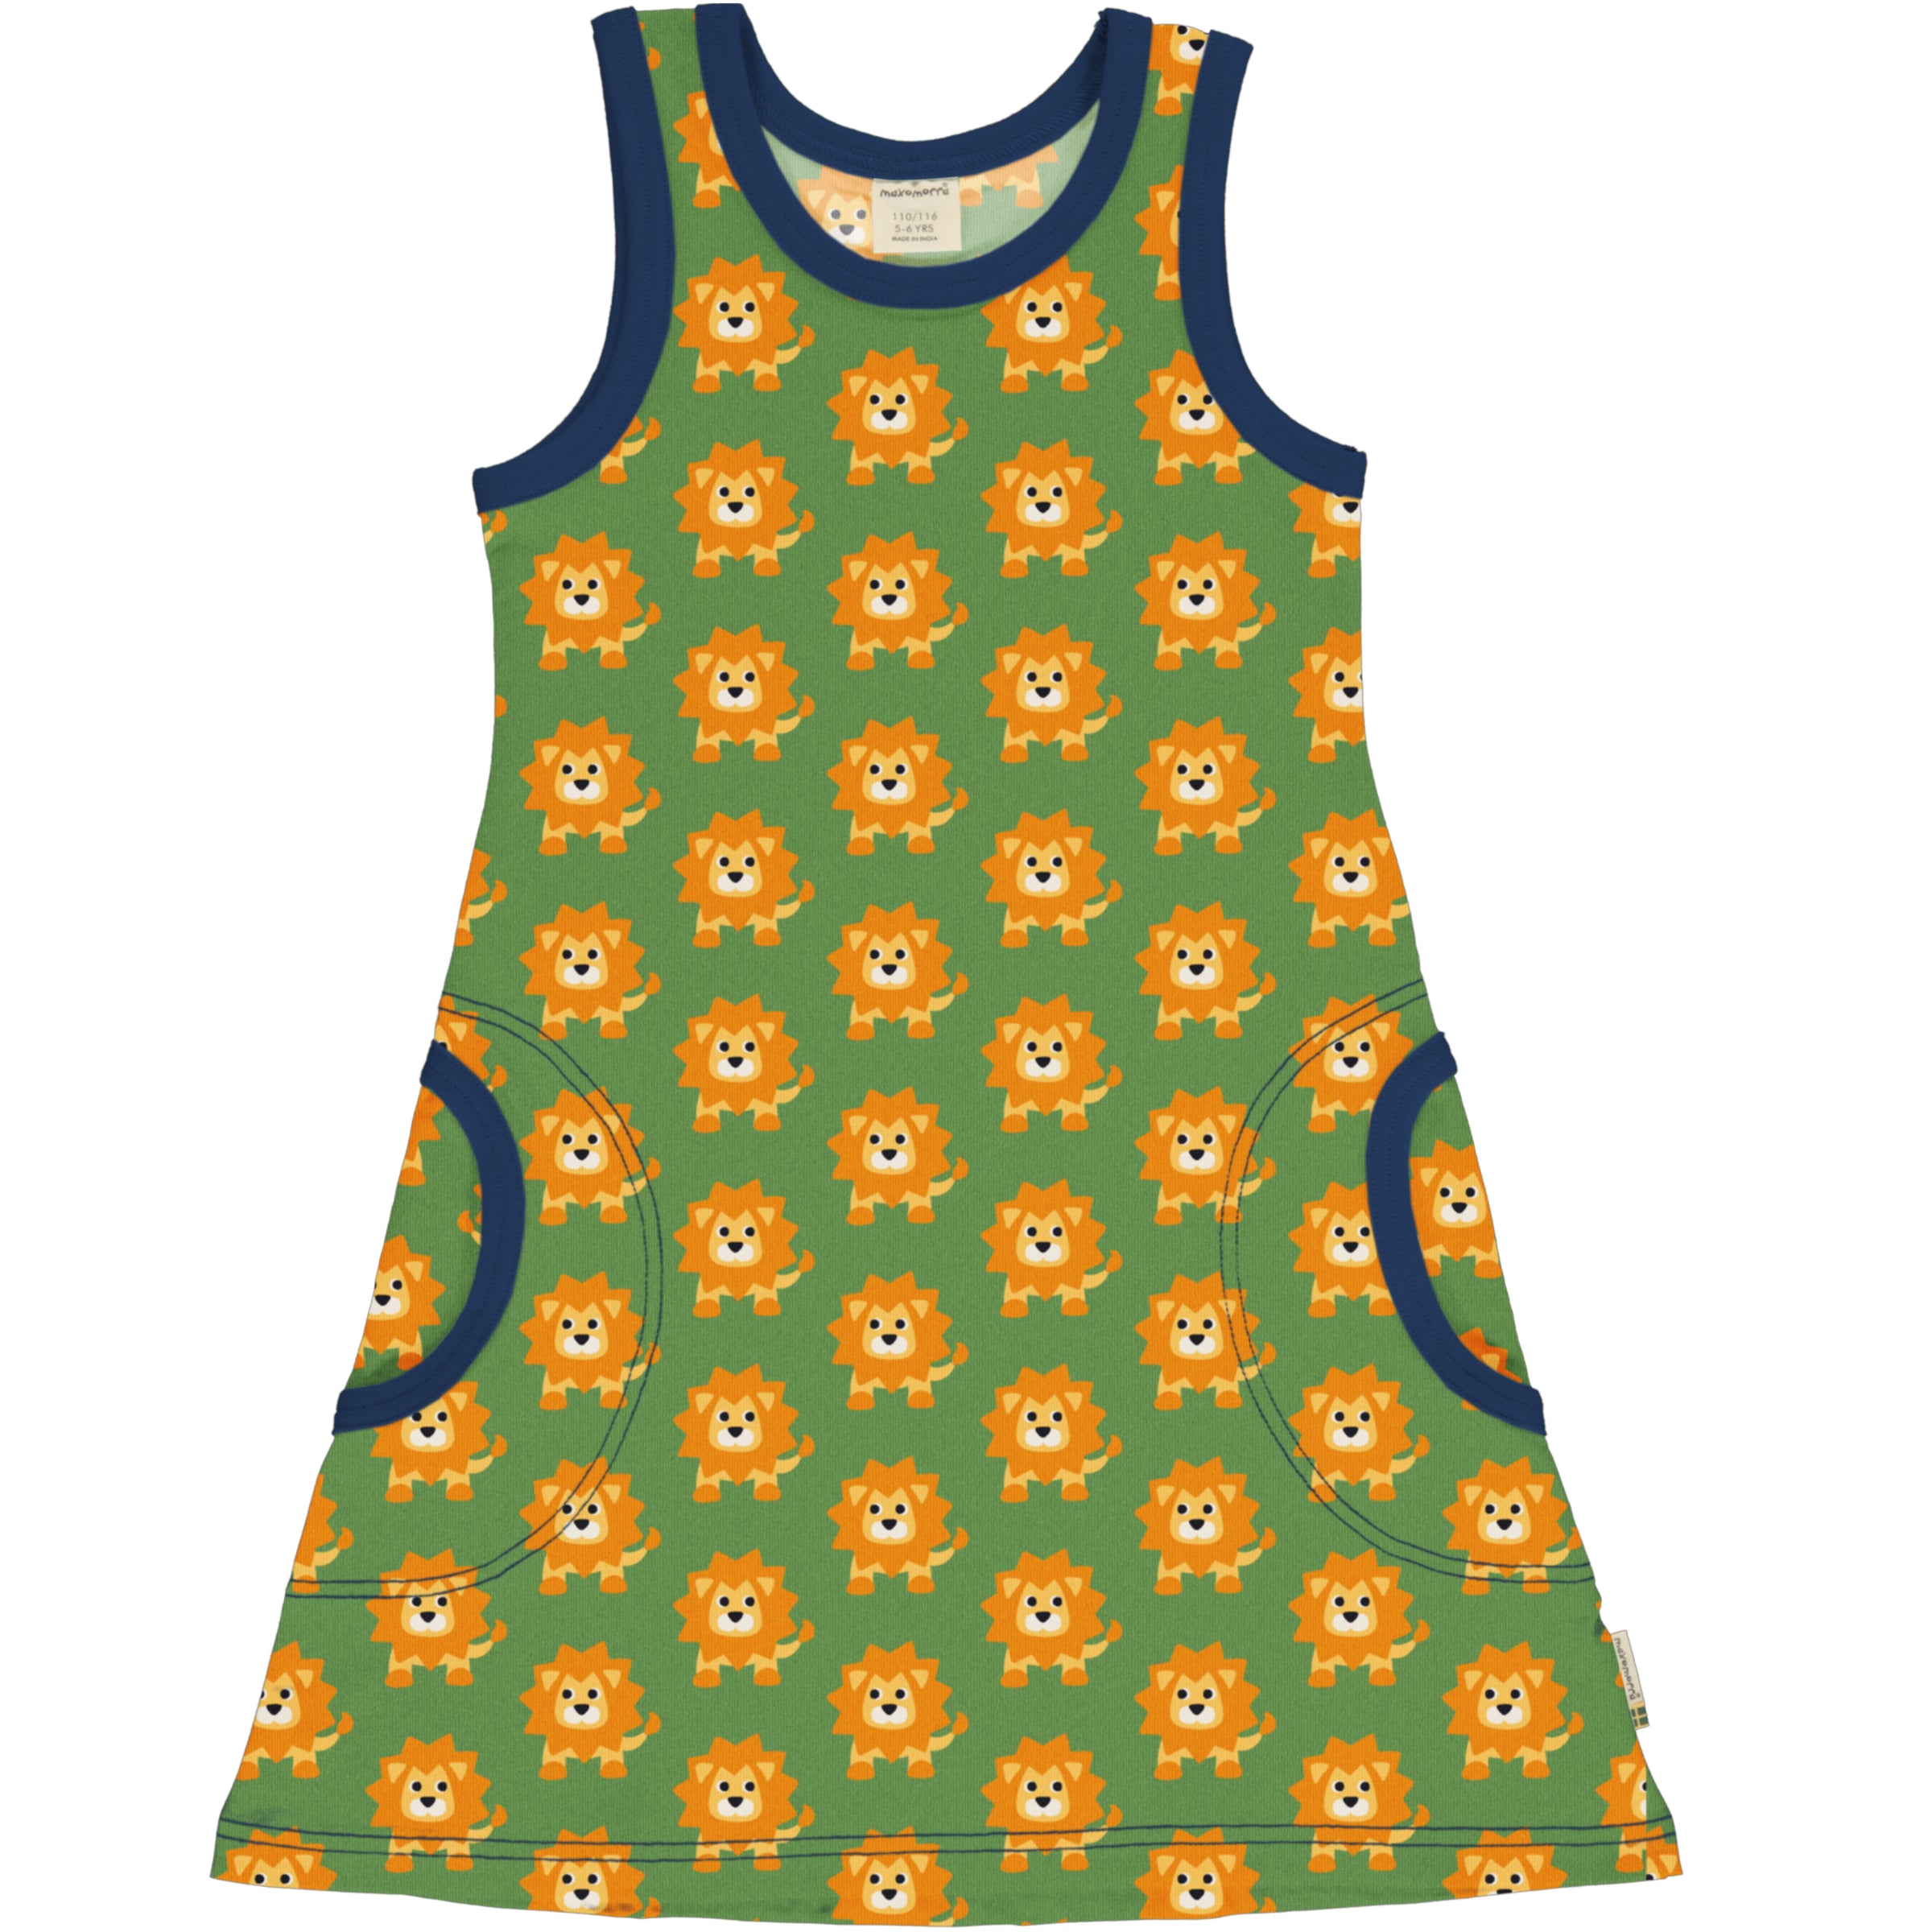 Children's Lion 2 Sleeveless Dress - Maxomorra (Last Available)